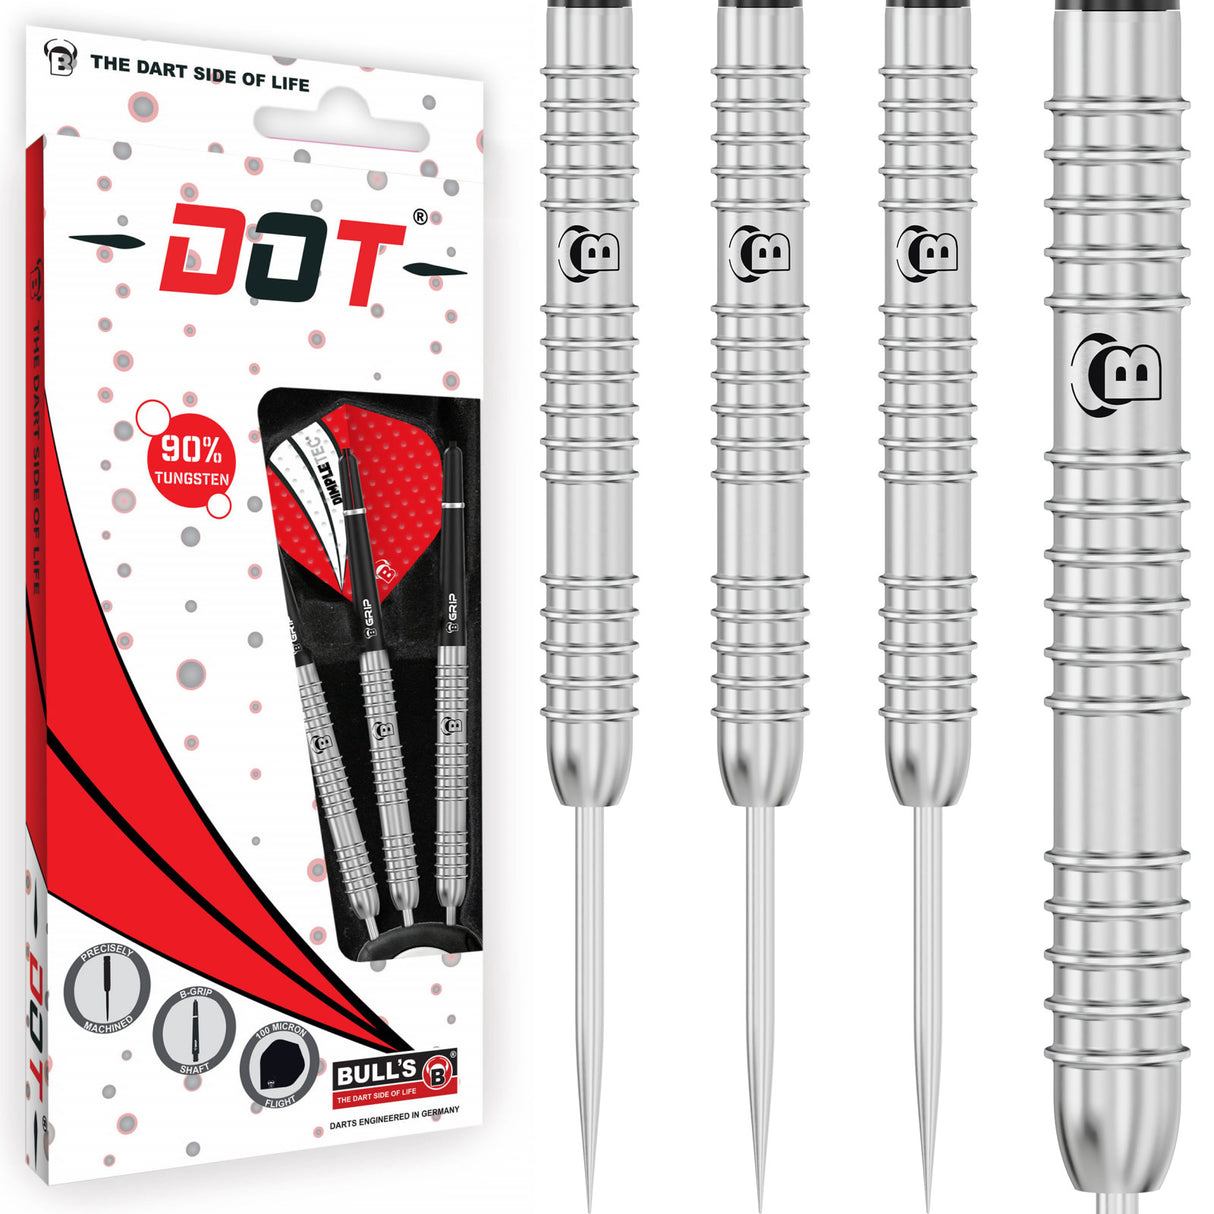 BULL'S Dot D8 Darts - Steel Tip - 90% Tungsten - Outer Grip